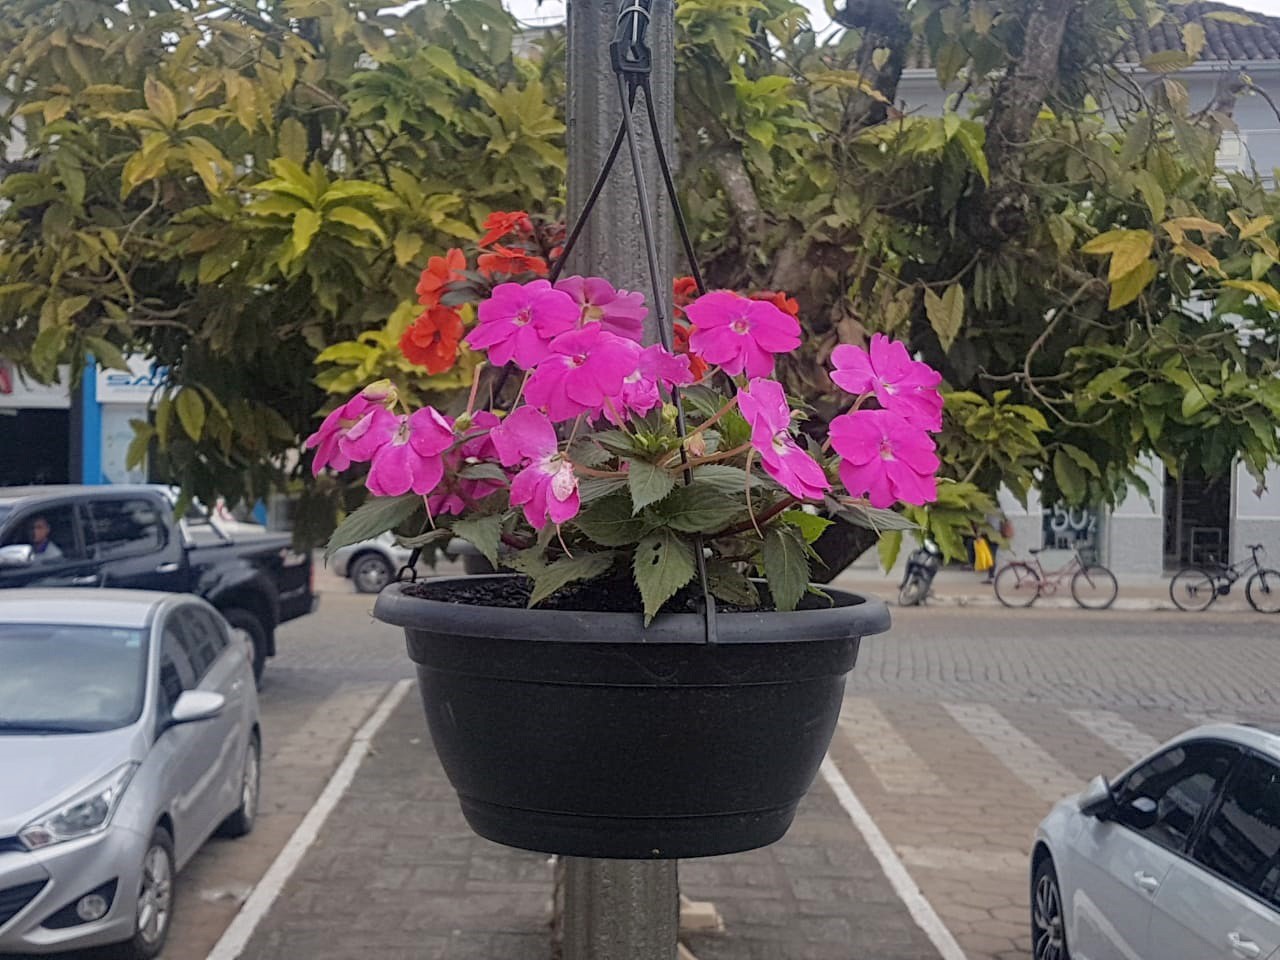 Flores dão colorido à praça no centro de Guaçuí